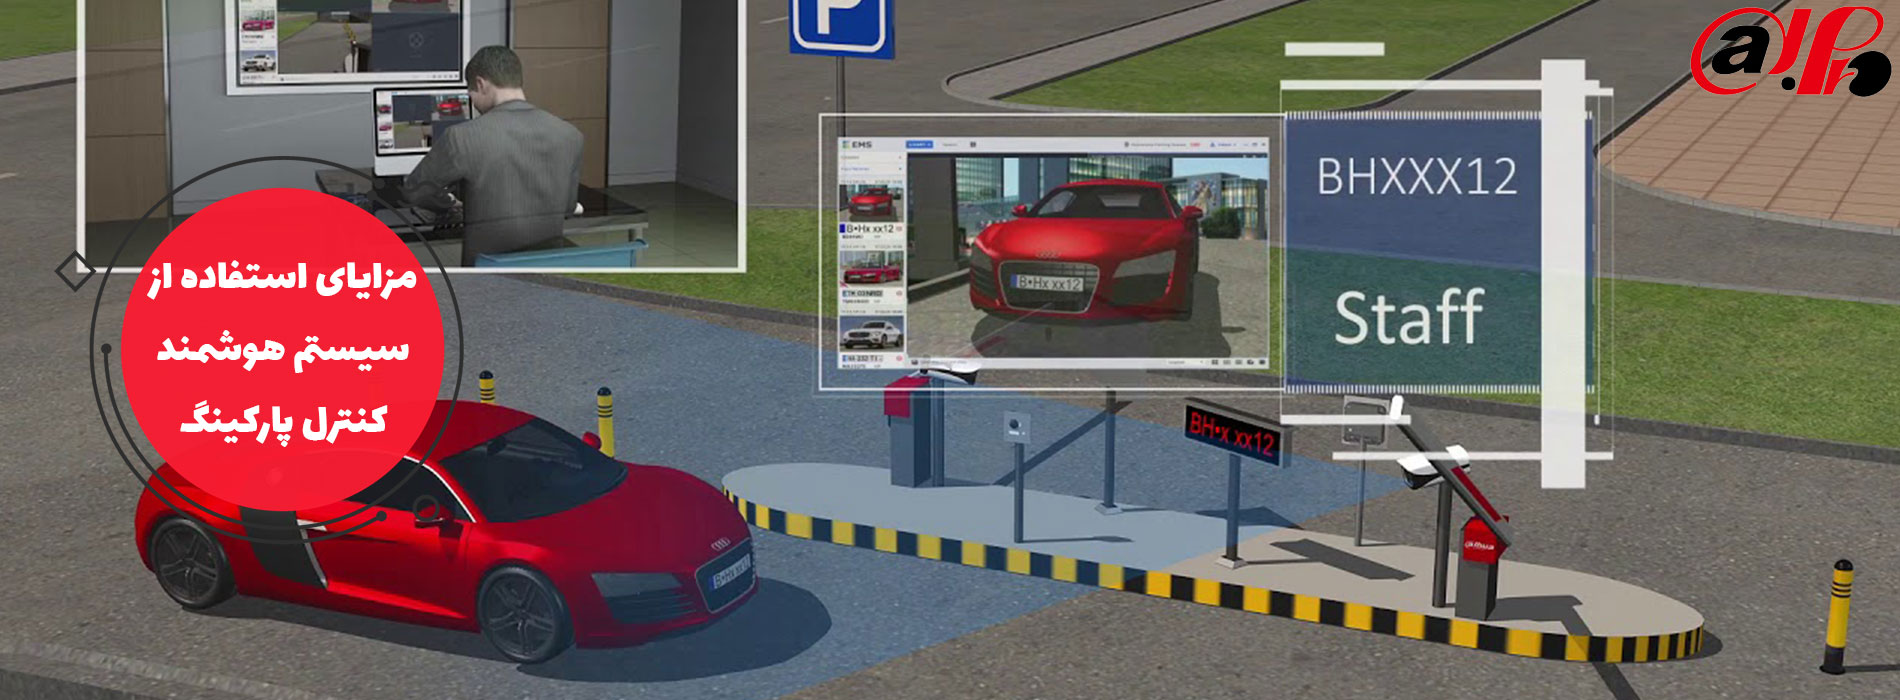 مزایای استفاده از سیستم هوشمند کنترل پارکینگ